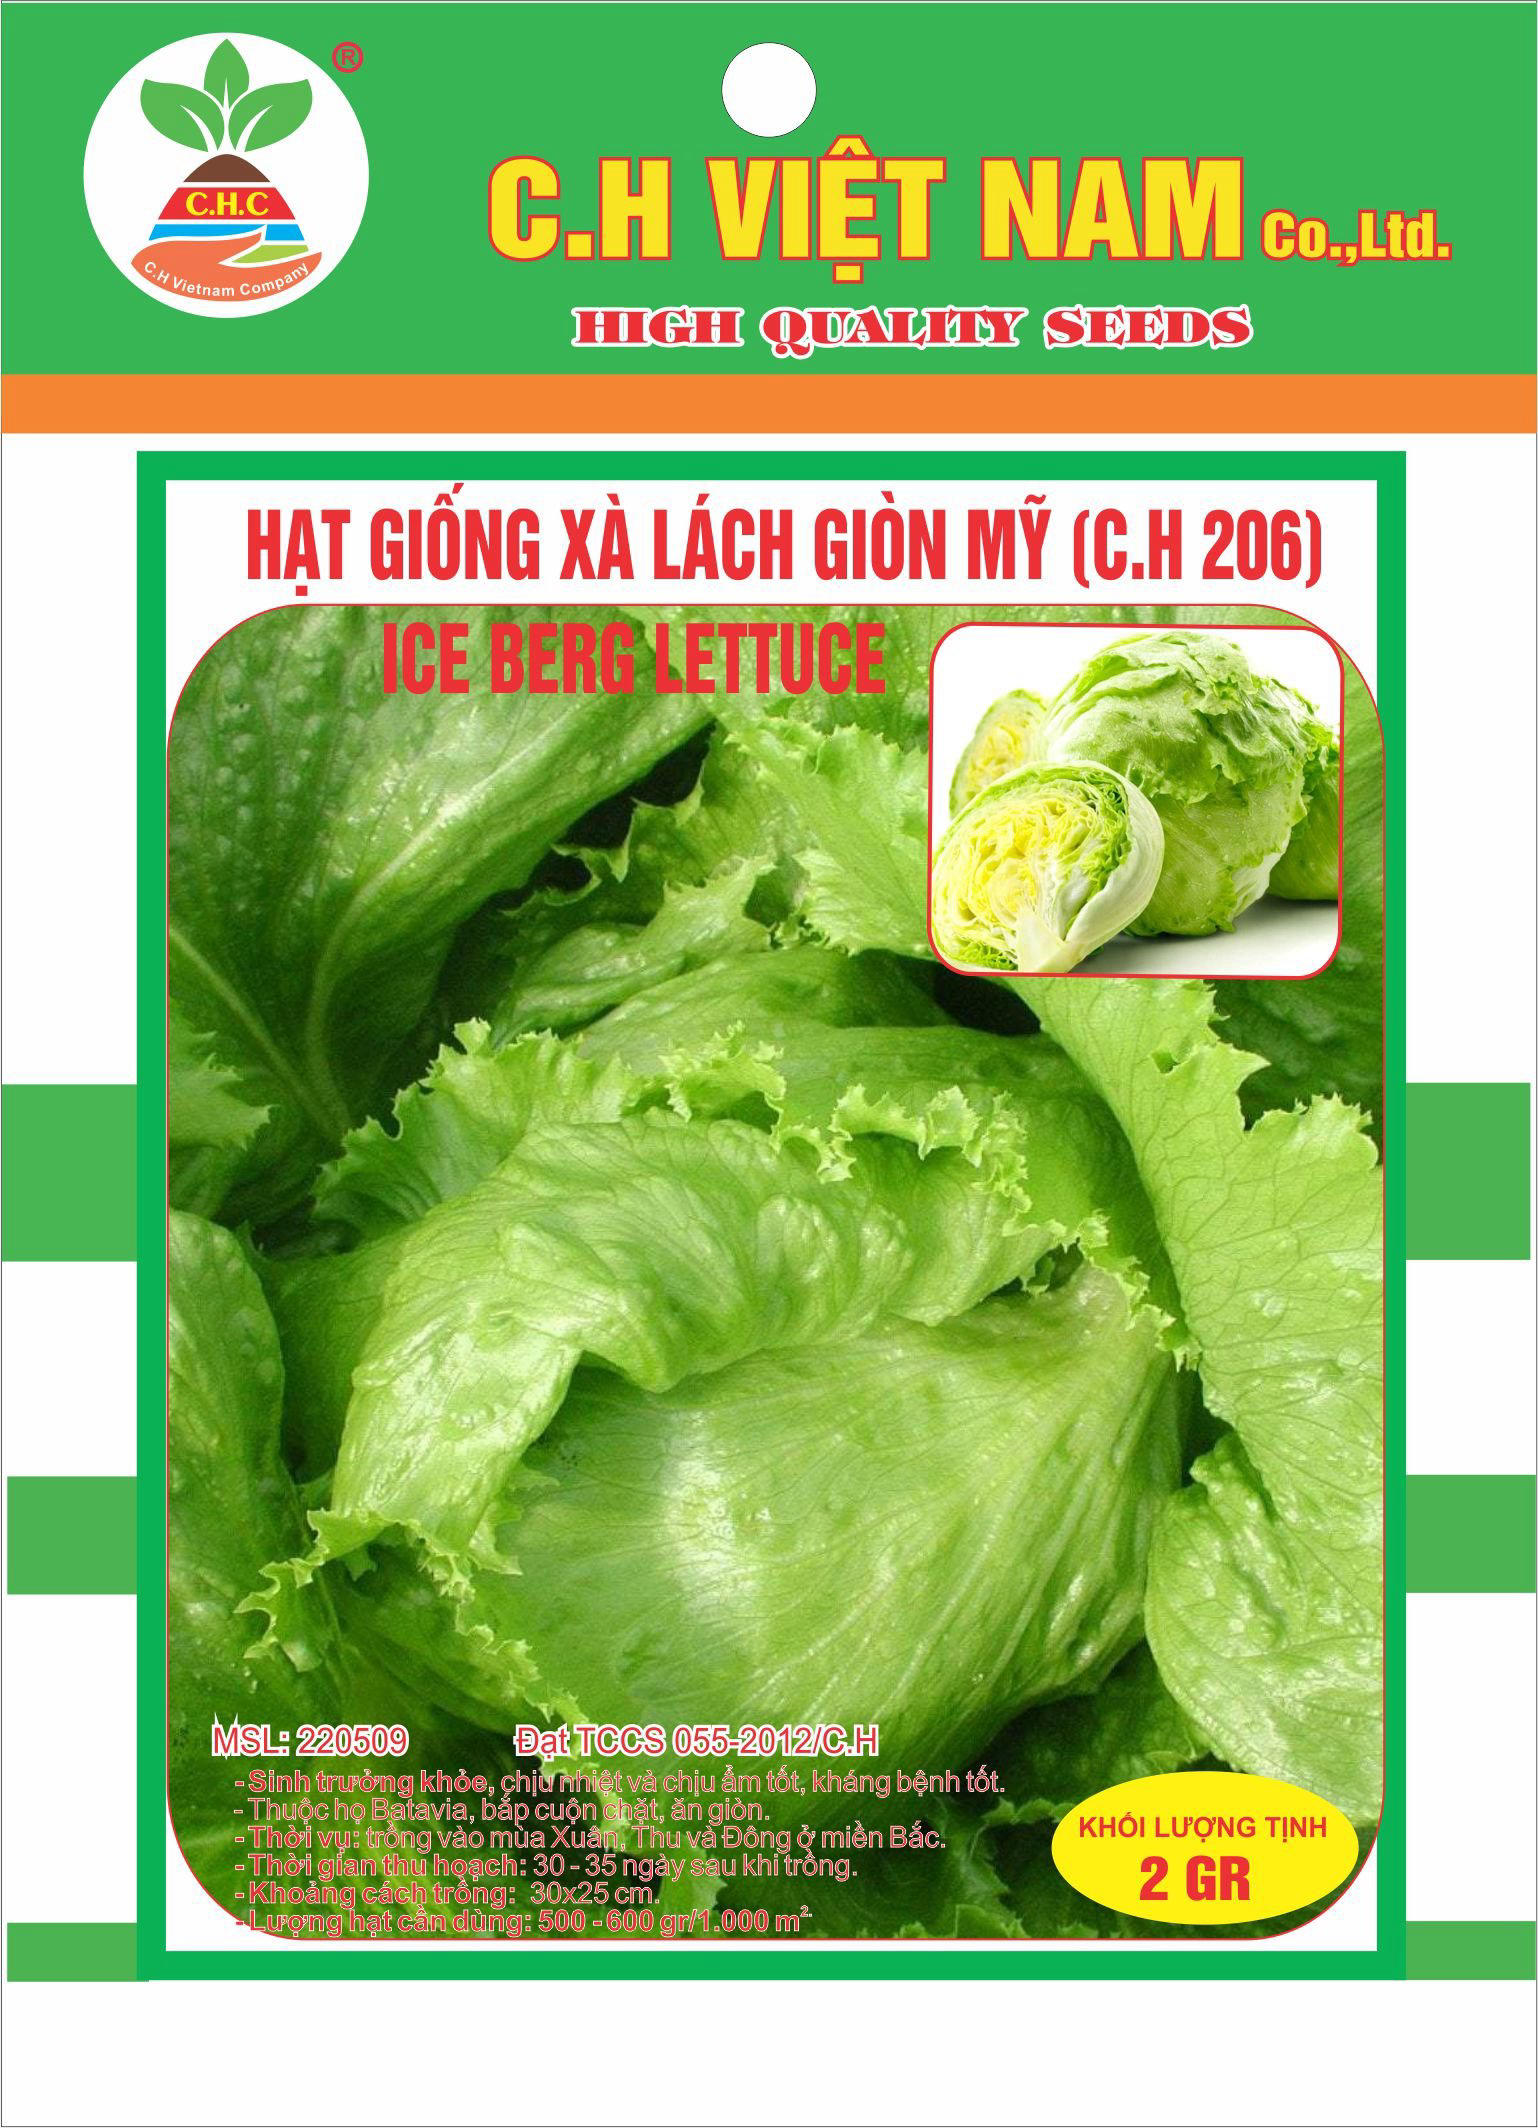 American crispy lettuce seeds />
                                                 		<script>
                                                            var modal = document.getElementById(